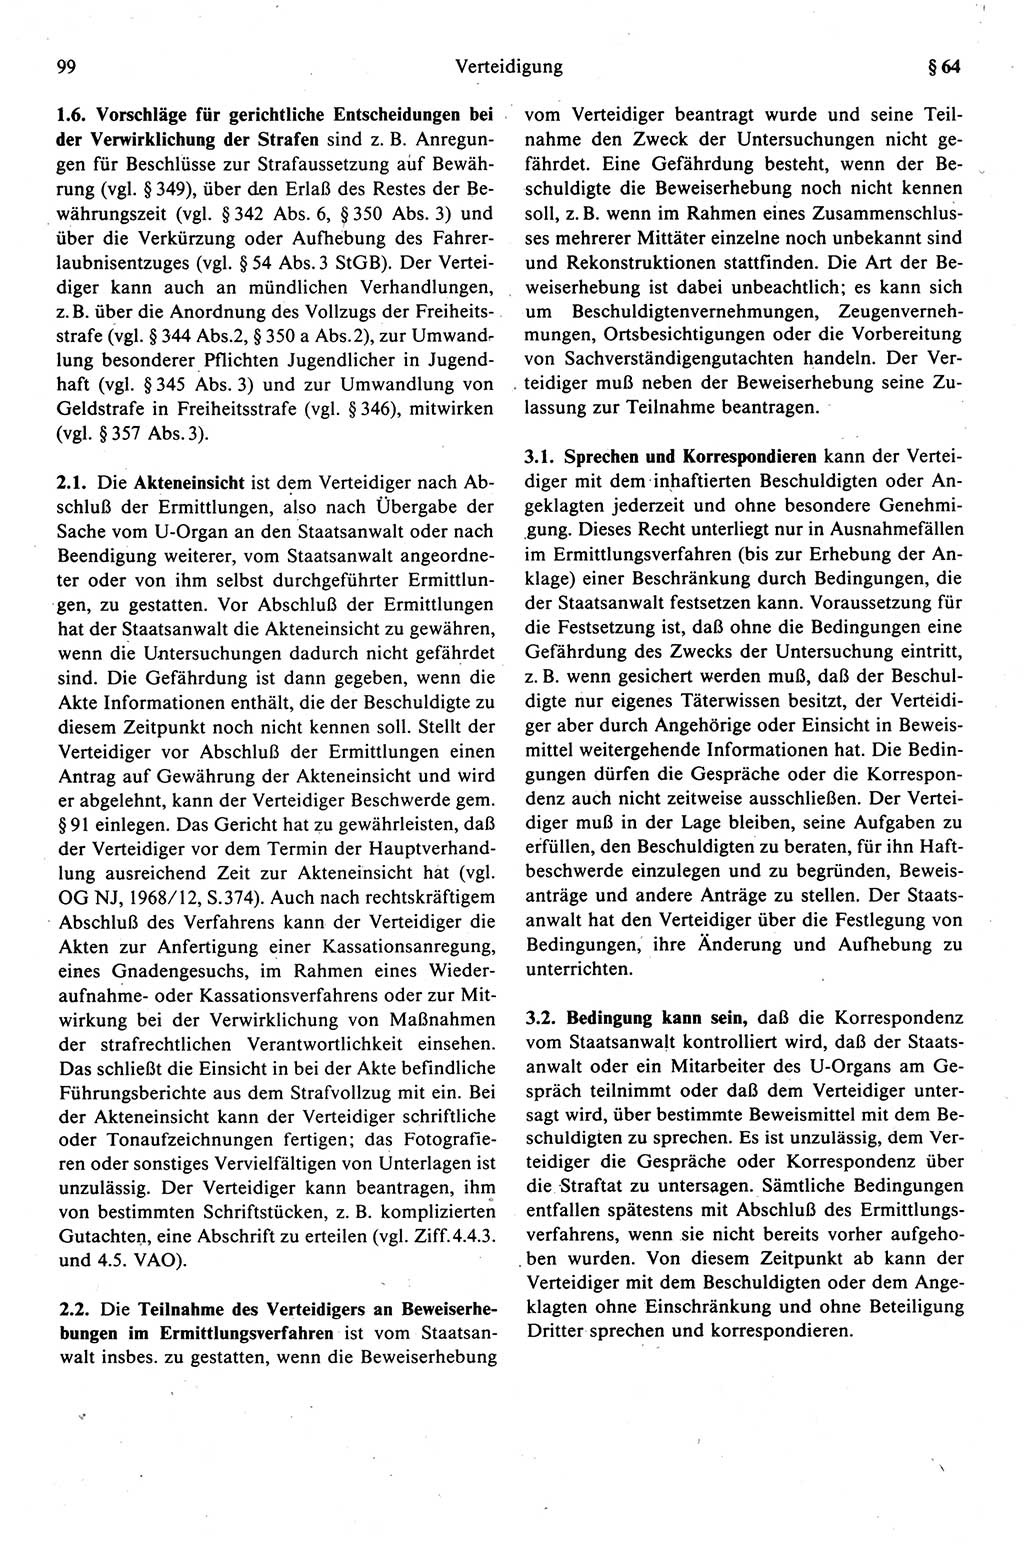 Strafprozeßrecht der DDR (Deutsche Demokratische Republik), Kommentar zur Strafprozeßordnung (StPO) 1989, Seite 99 (Strafprozeßr. DDR Komm. StPO 1989, S. 99)